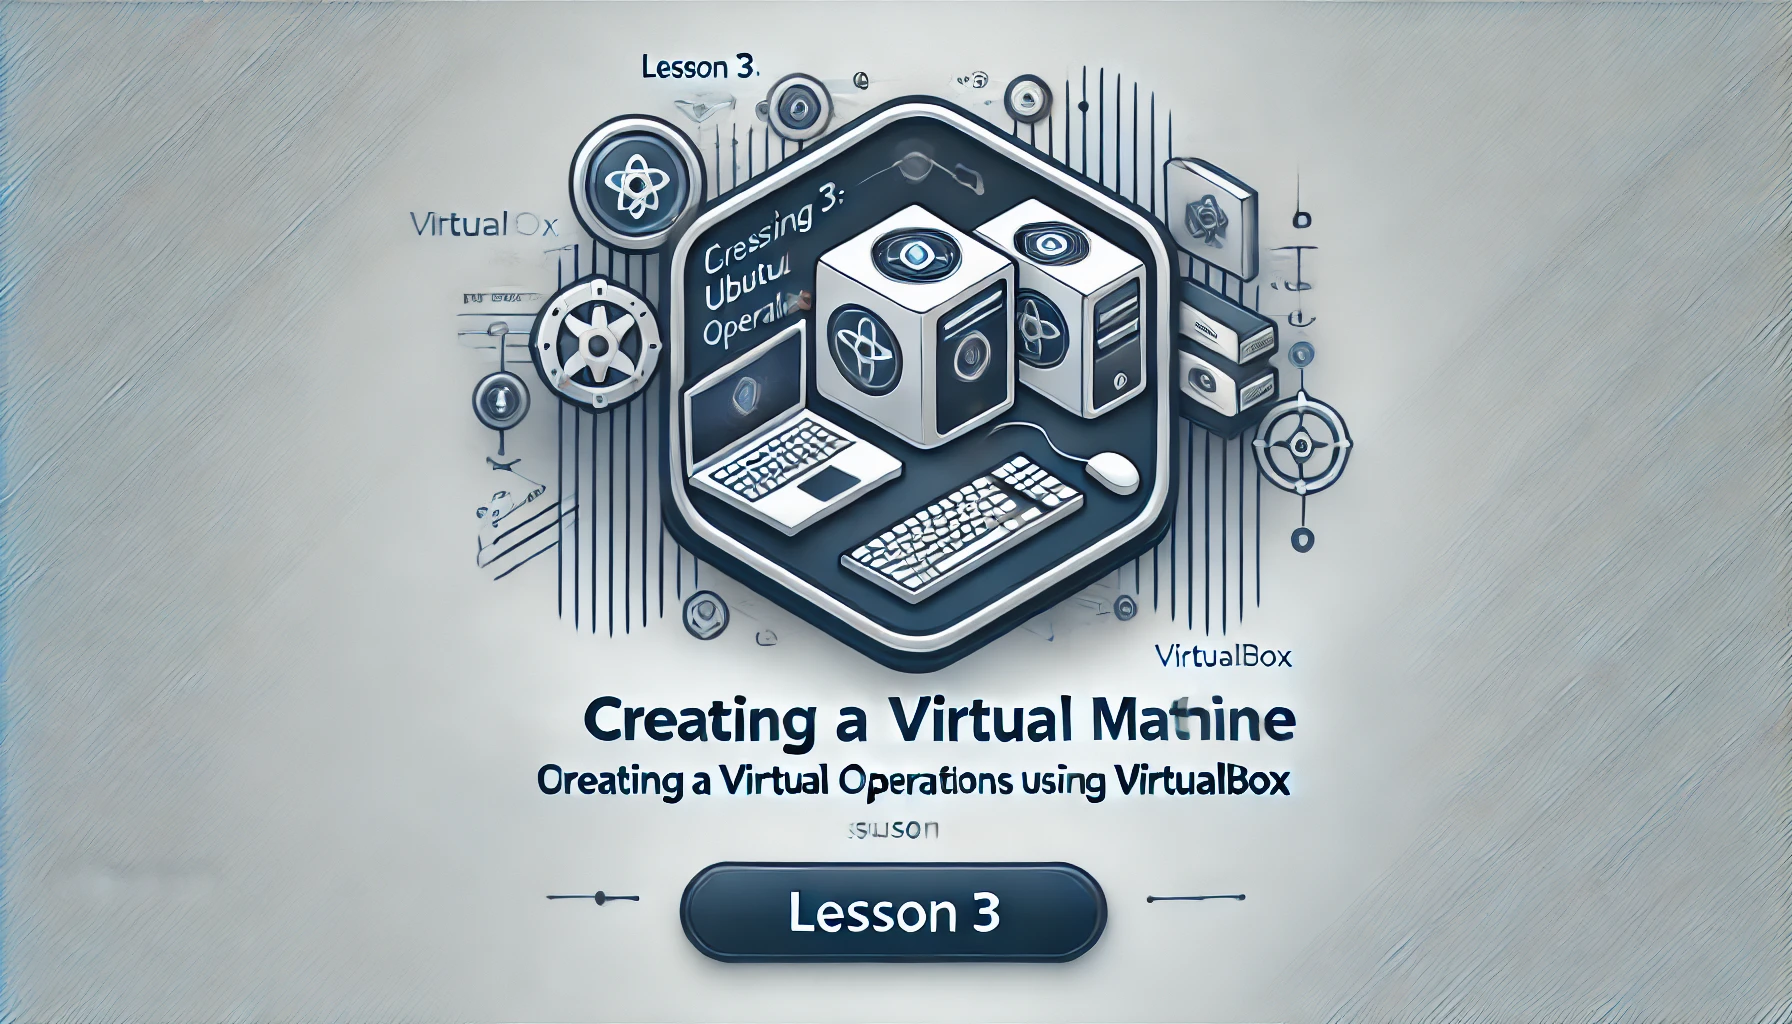 Lesson 3 - Creating a Virtual Machine in VirtualBox